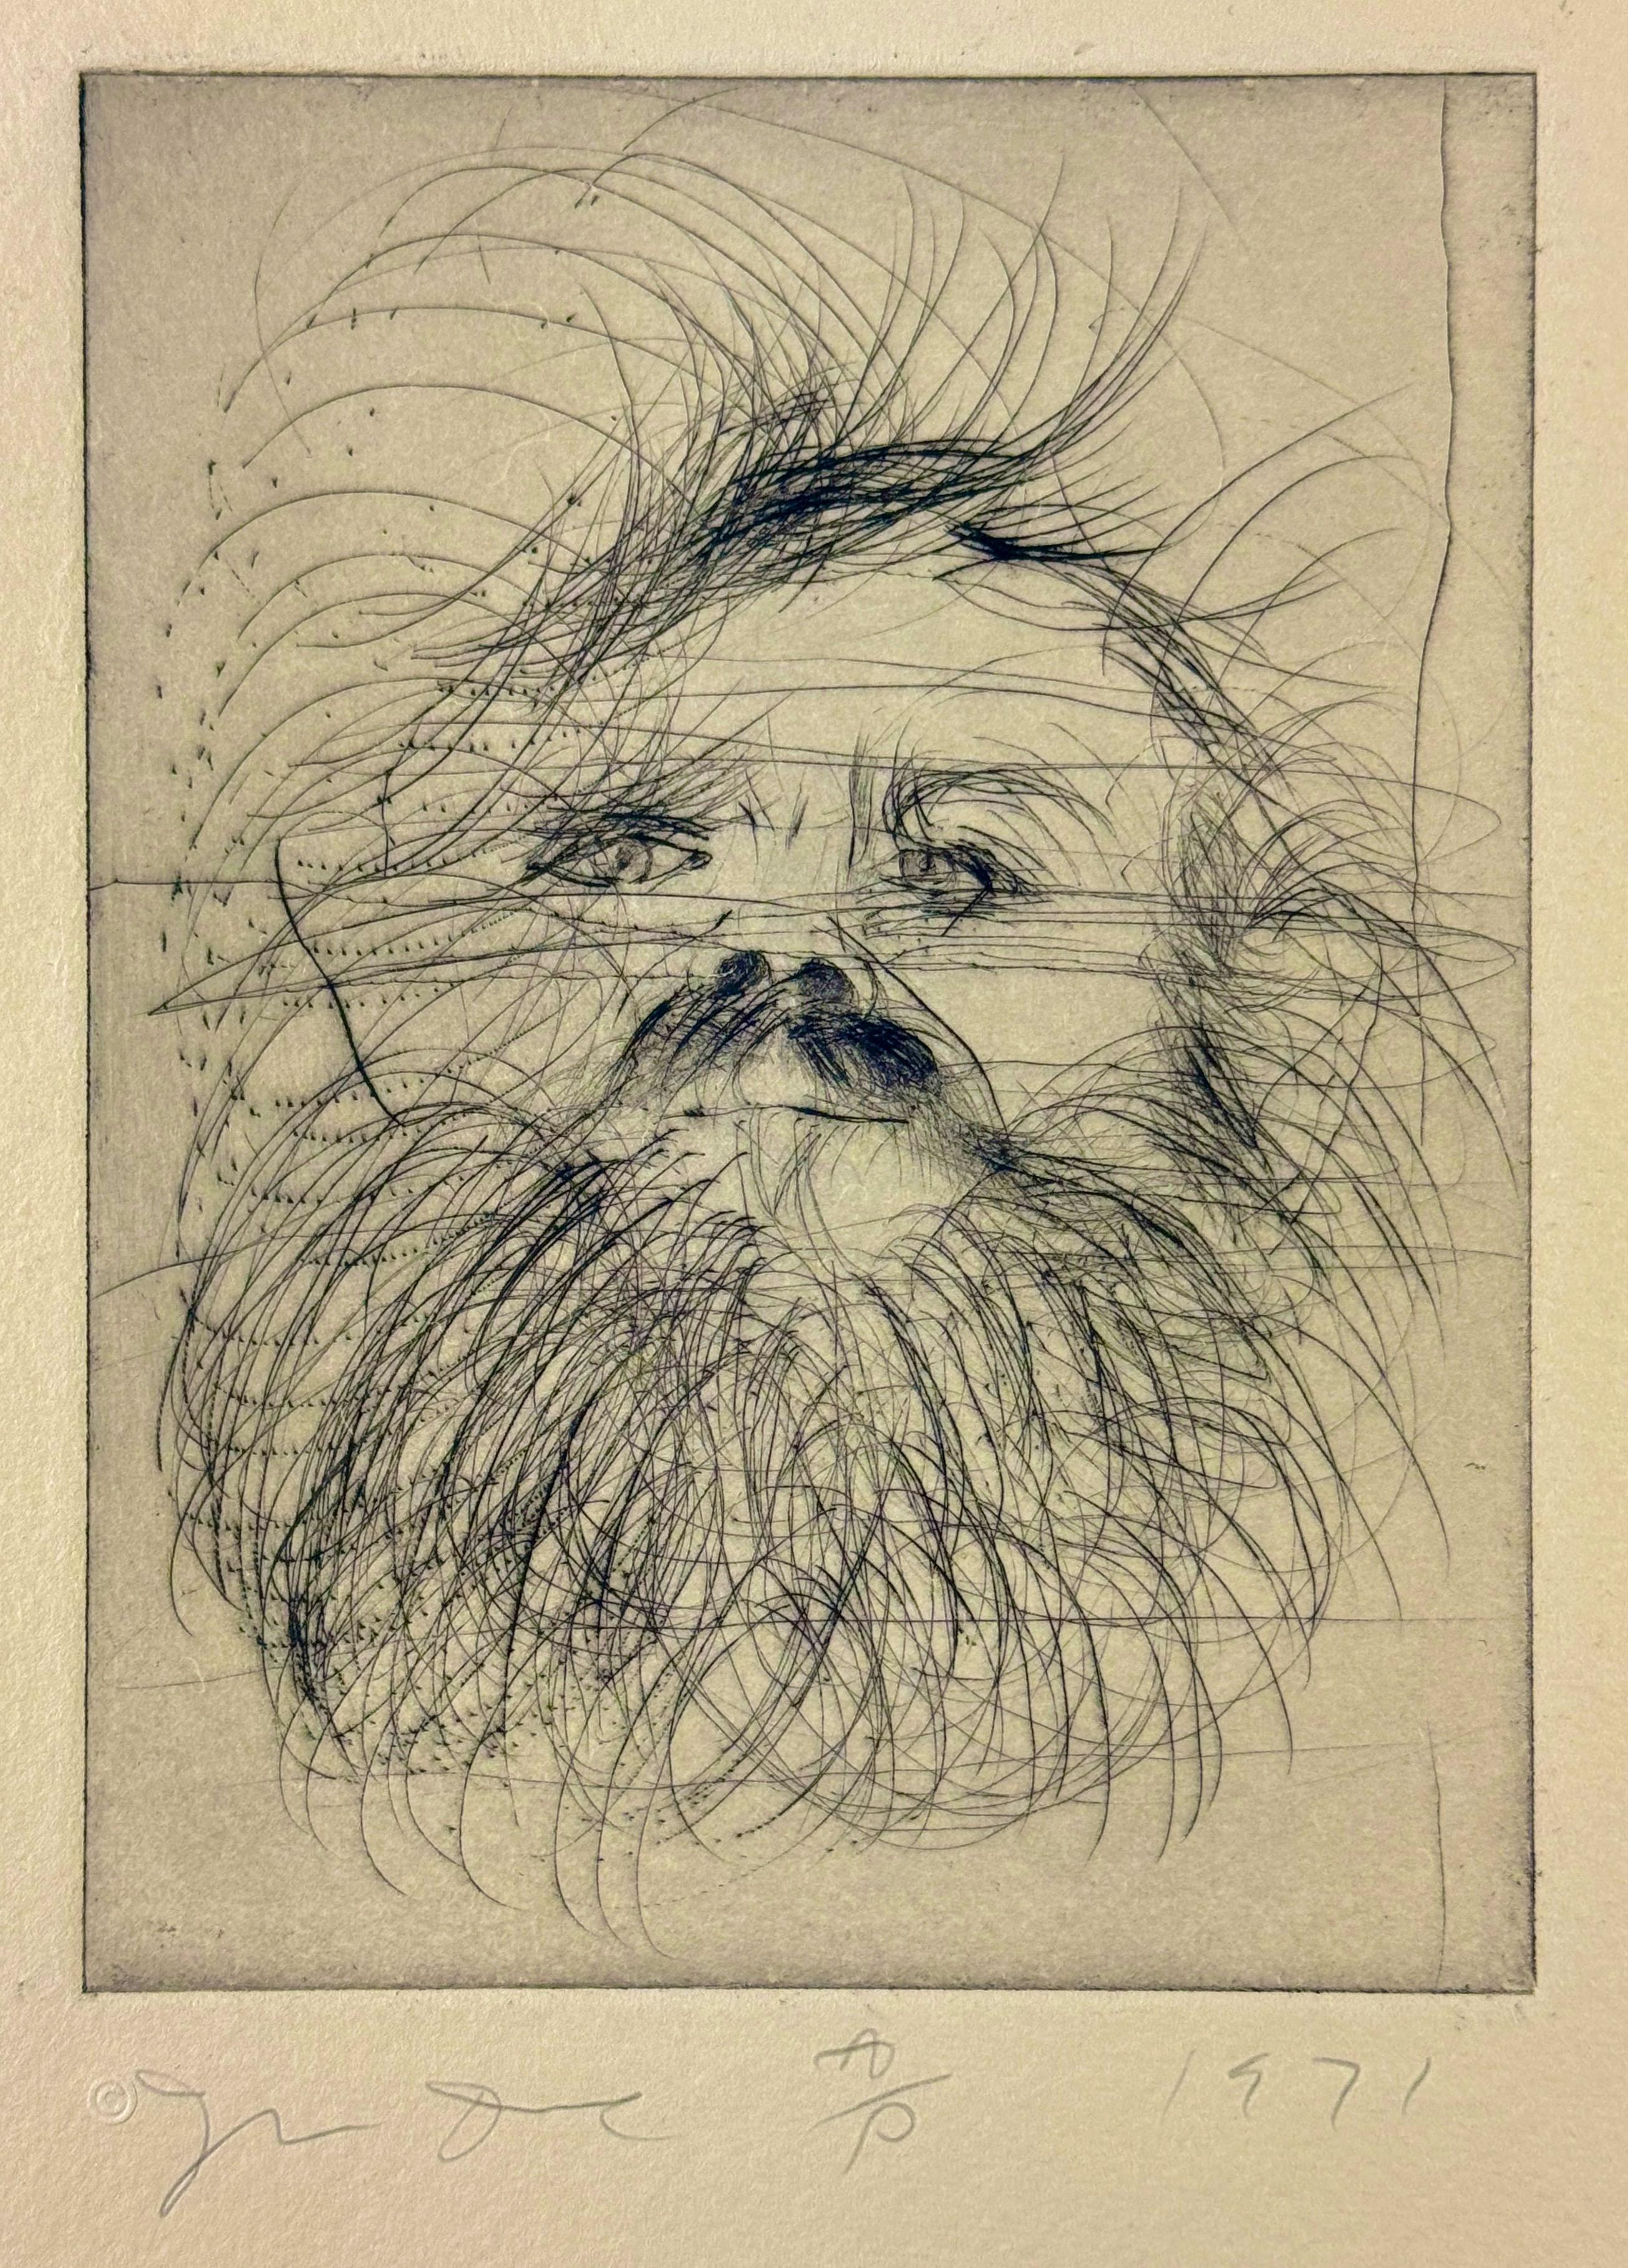 Jim Dine, Self-Portrait 
Kaltnadel auf Hodgkinson Hand Made Tone-Weave Papier
Papier 18 x 14 in. / 46 x 36 cm
Platte 8 x 6 in. / 20 x 15 cm
Platte eins aus Self-Portraits (1971), einer Mappe mit neun Kaltnadelradierungen. Auflage 25 + 5 Probedrucke;